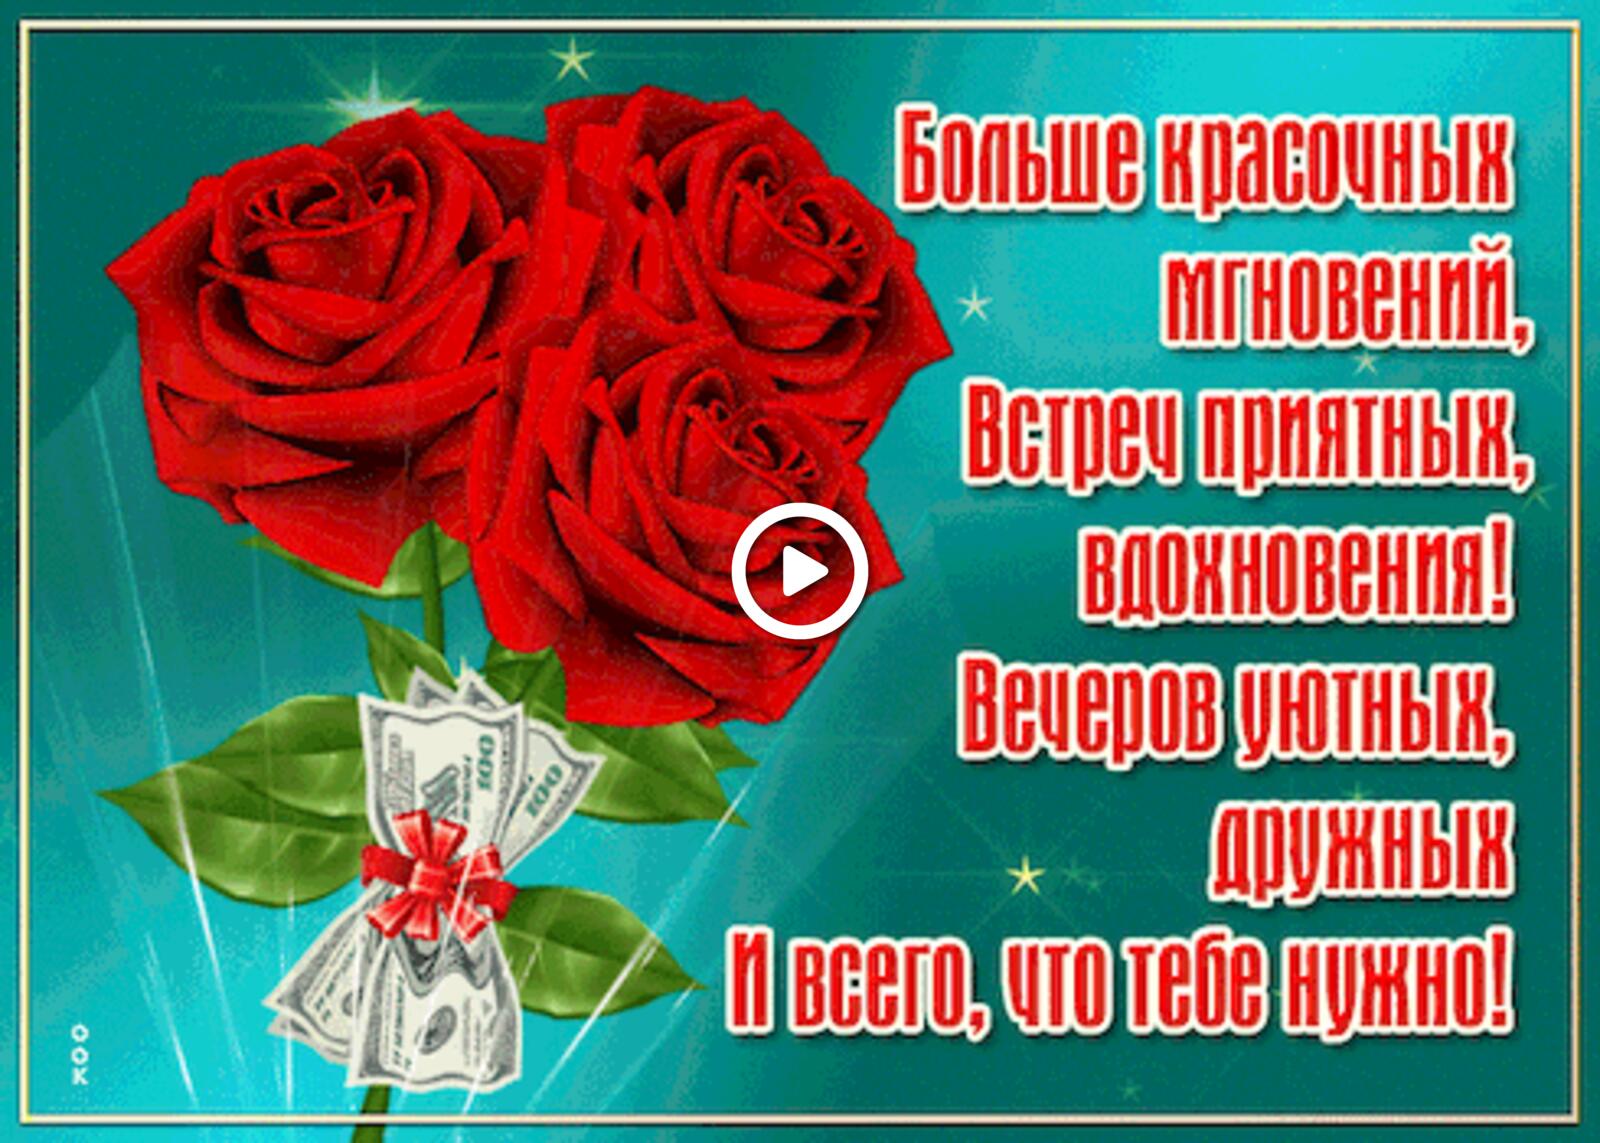 一张以美丽 更多丰富多彩的时刻 红玫瑰为主题的明信片